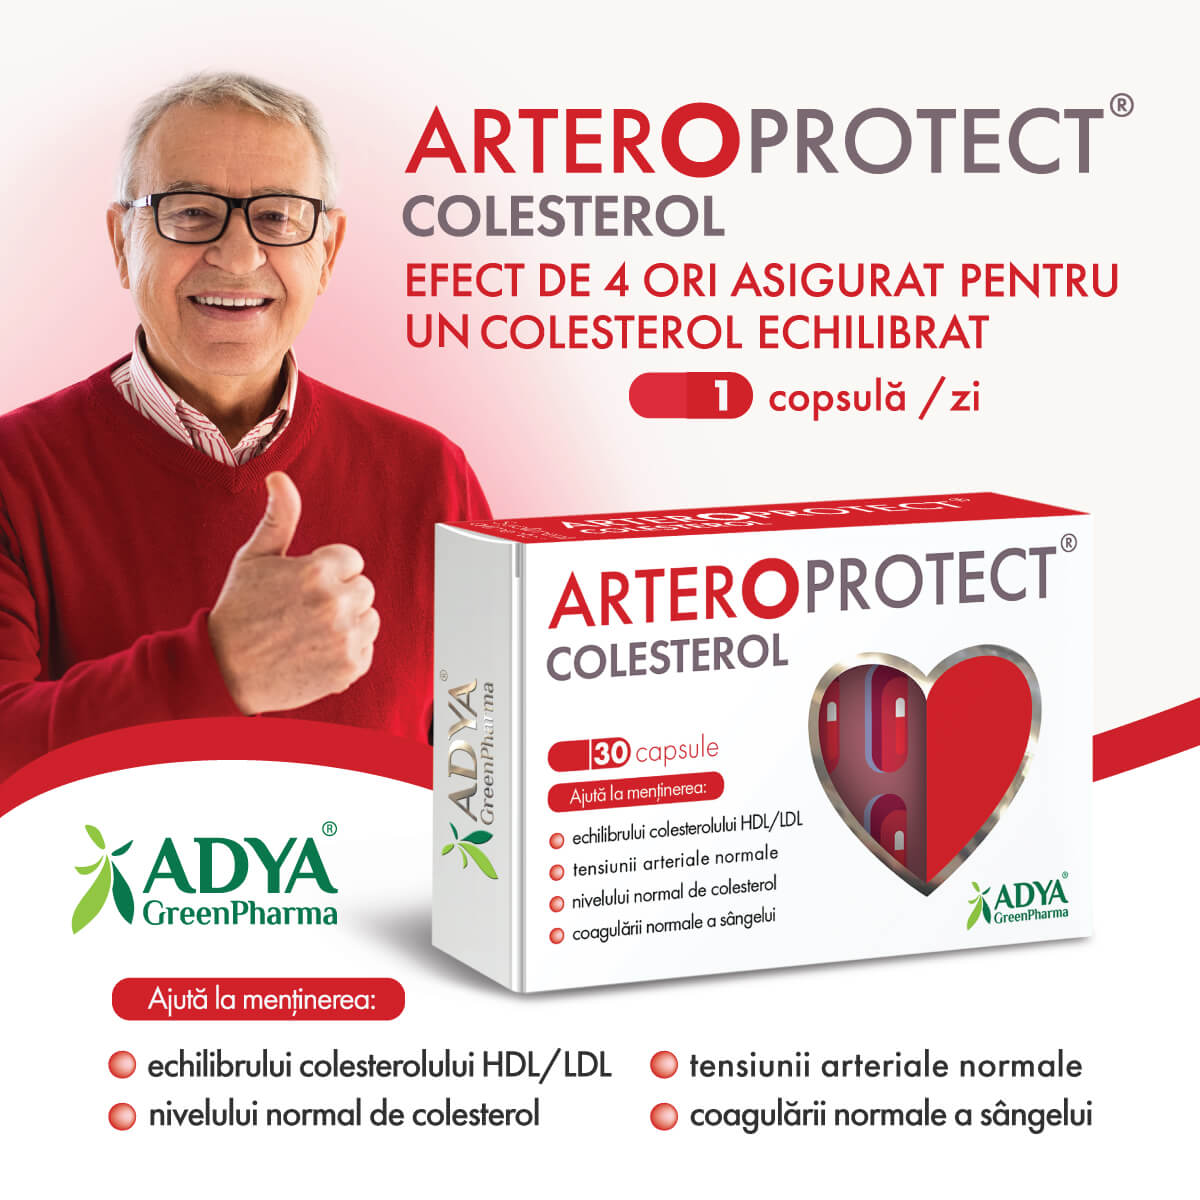 Arteroprotect Colesterol Adya GreenPharma